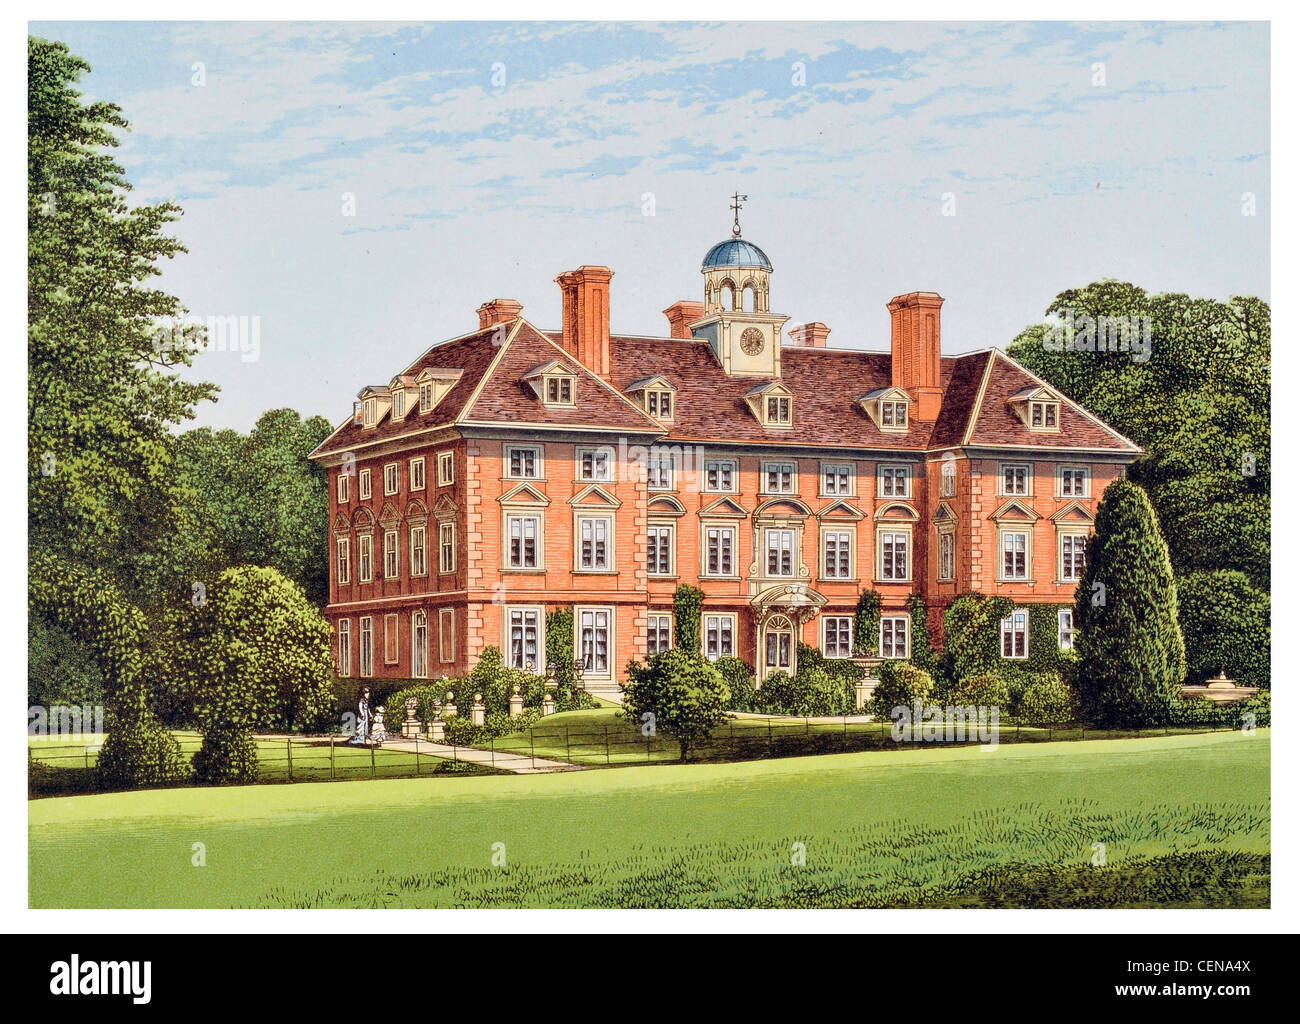 Casa Tyttenhanger xvii secolo paese mansion Hertfordshire Inghilterra REGNO UNITO grado che ho elencato la costruzione Park Foto Stock